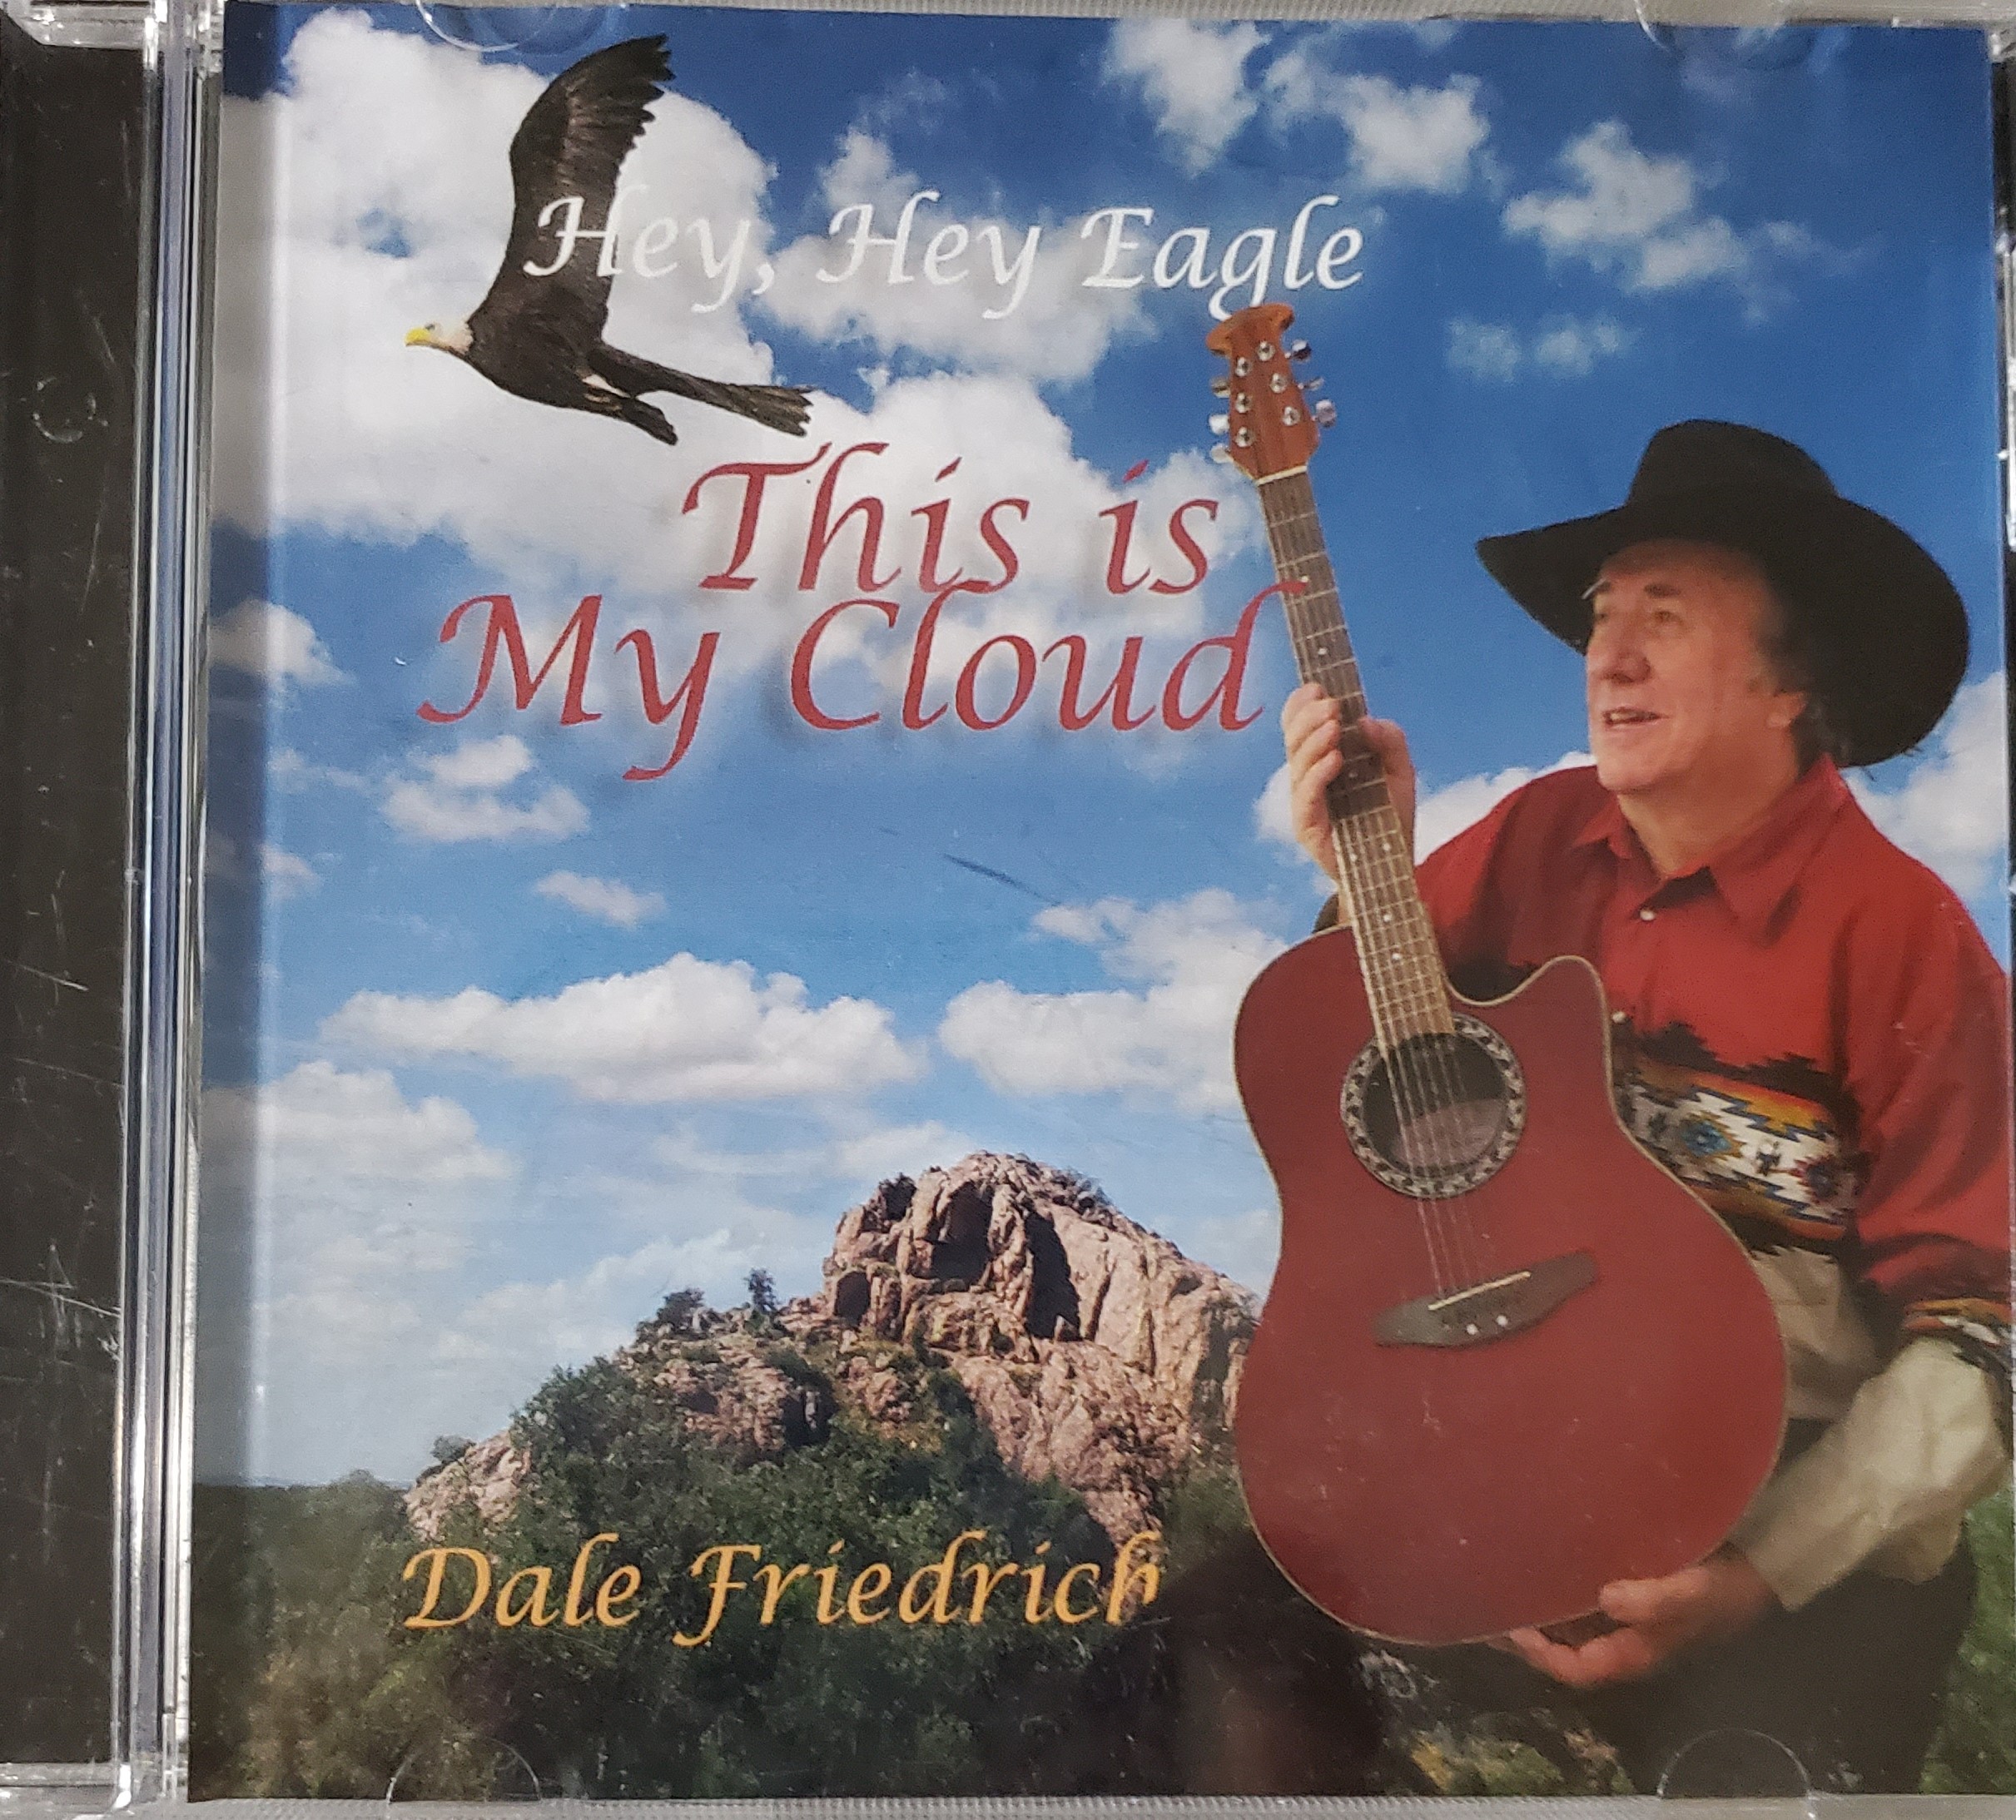 Dale Friedrich CDs